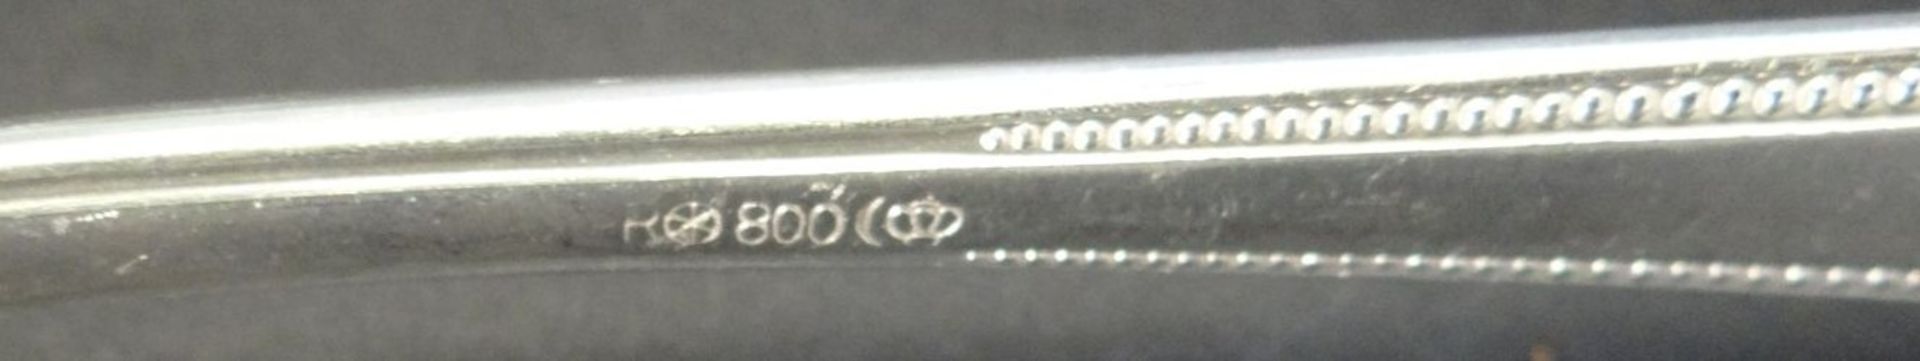 3x Silber-800- Gabeln, gut erhalten, zus. 230 gramm, L-21 cm - Bild 3 aus 3